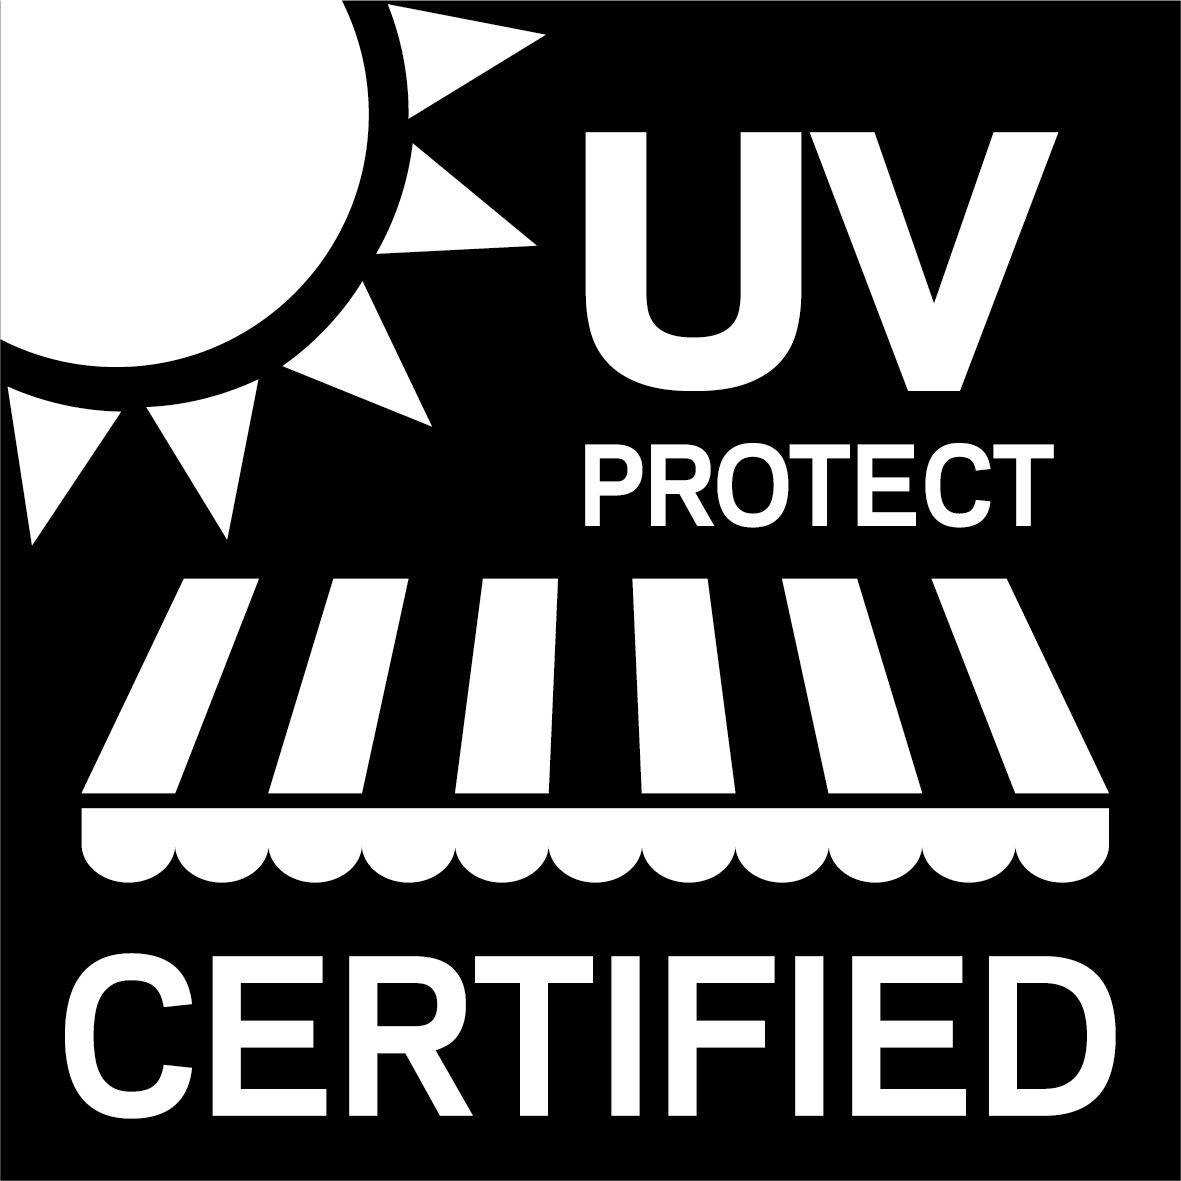 Tous les tissus Sattler sont soumis aux critères d’inspection UV les plus stricts, afin de garantir leur effet de protection.